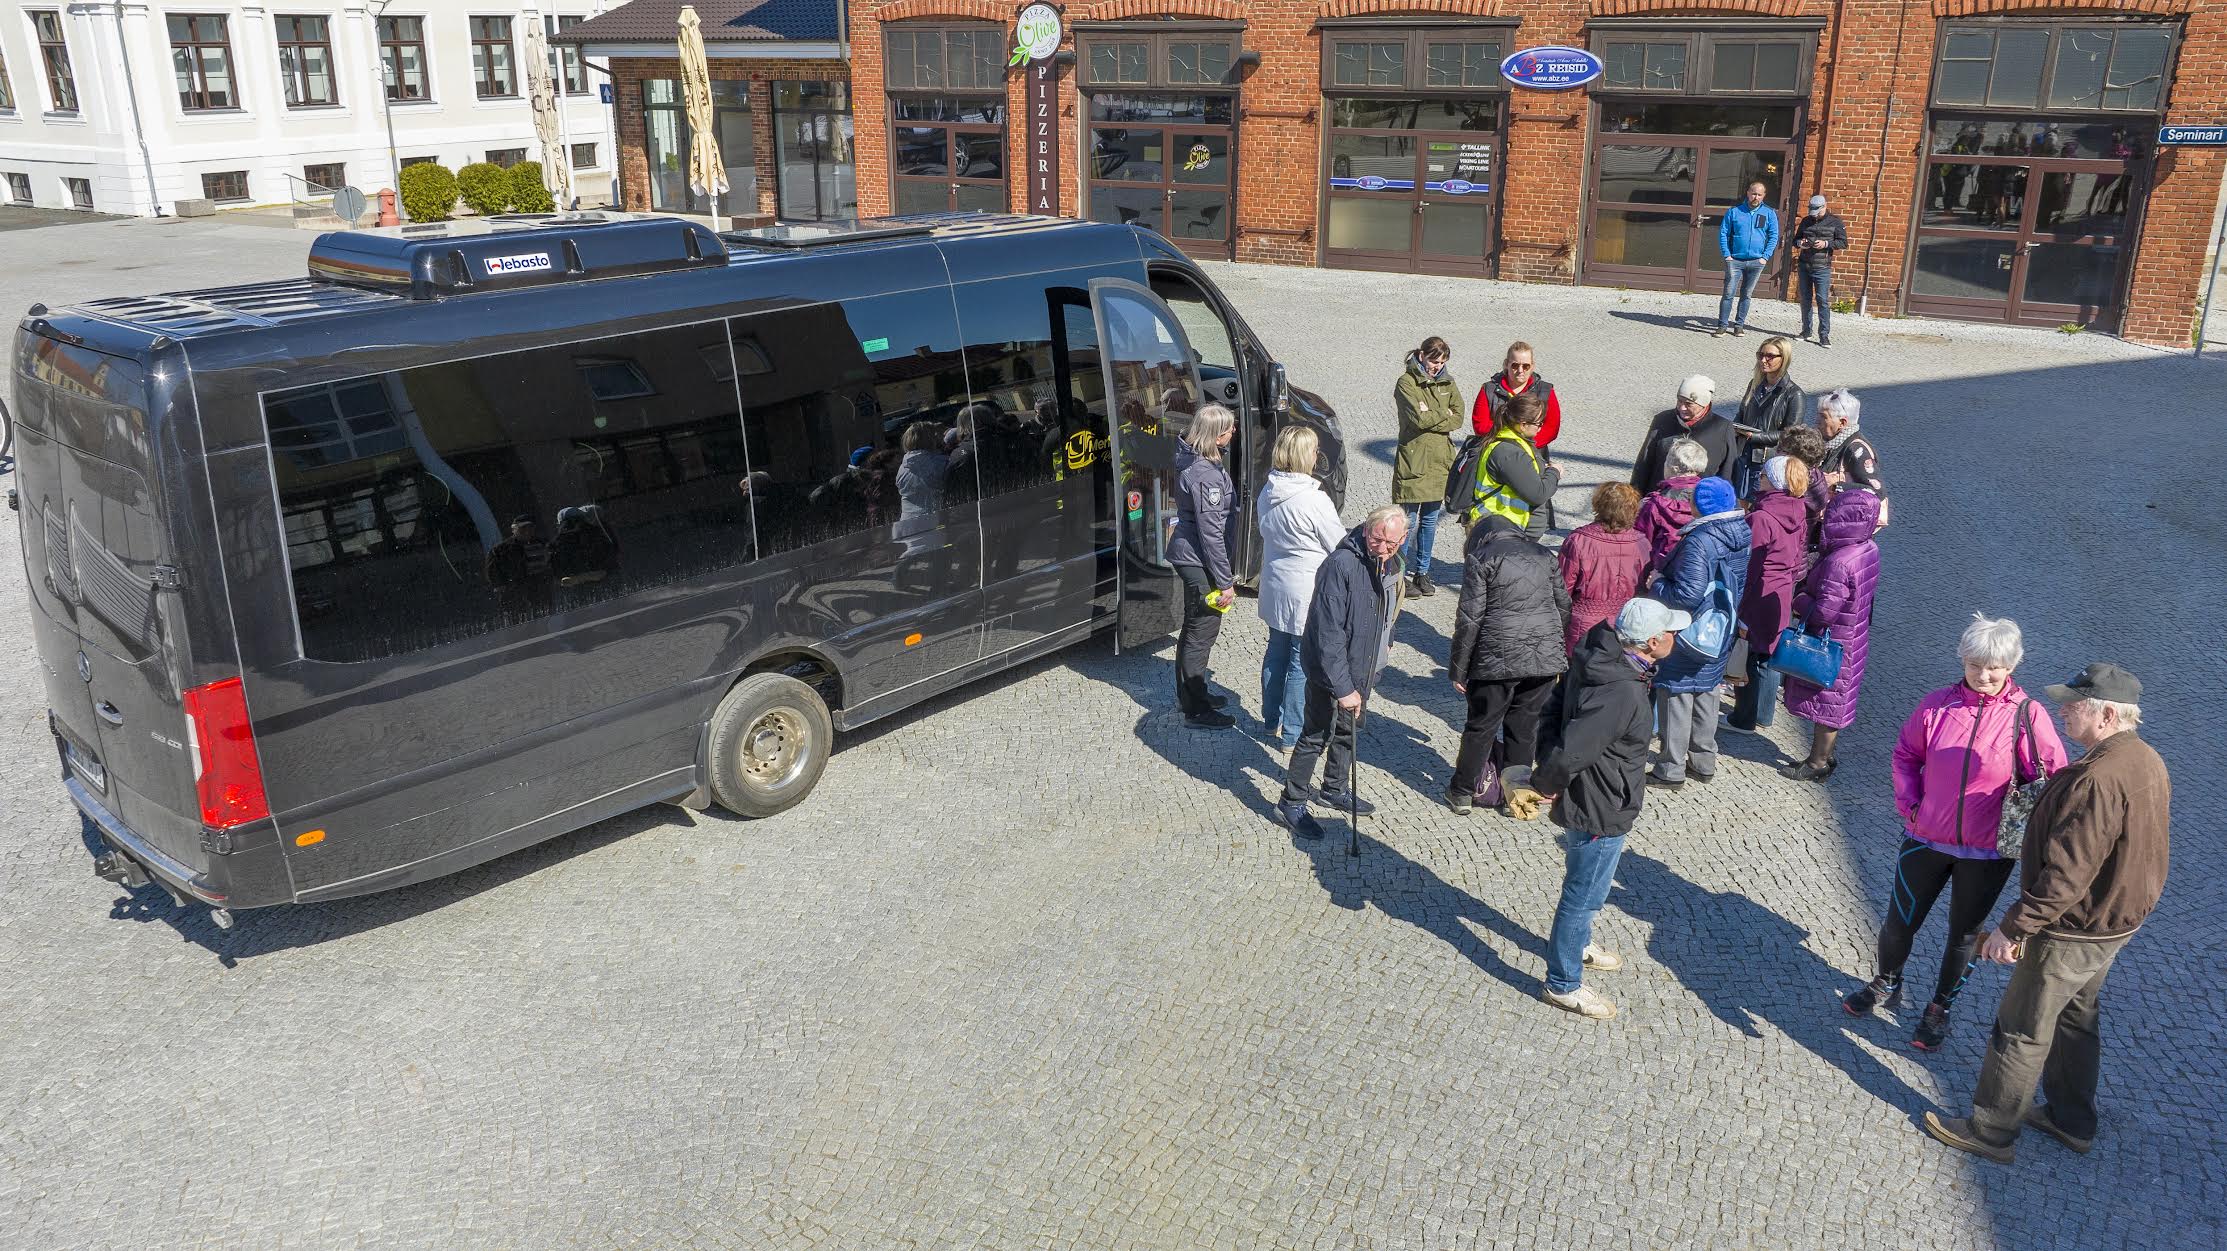 Merling Reiside buss peatus neljapäeva keskpäeval  Võru linna keskväljakul, et evakueerida 16 inimest  ohutusse paika. FOTOD: Aigar Nagel